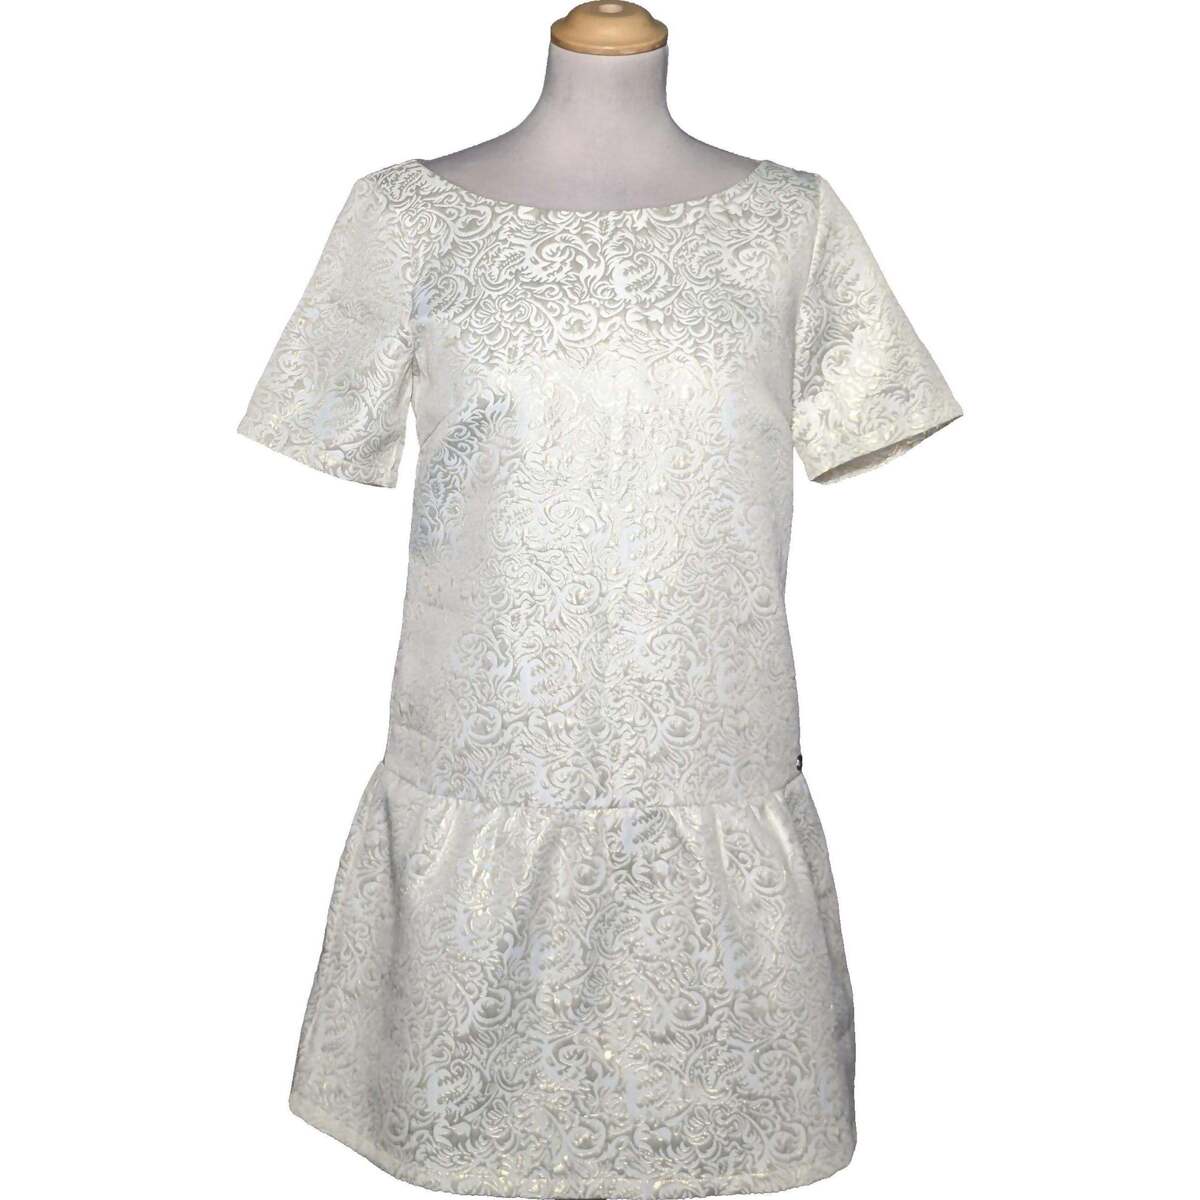 Vêtements Femme ou tour de hanches se mesure à lendroit le plus fort robe courte  36 - T1 - S Blanc Blanc